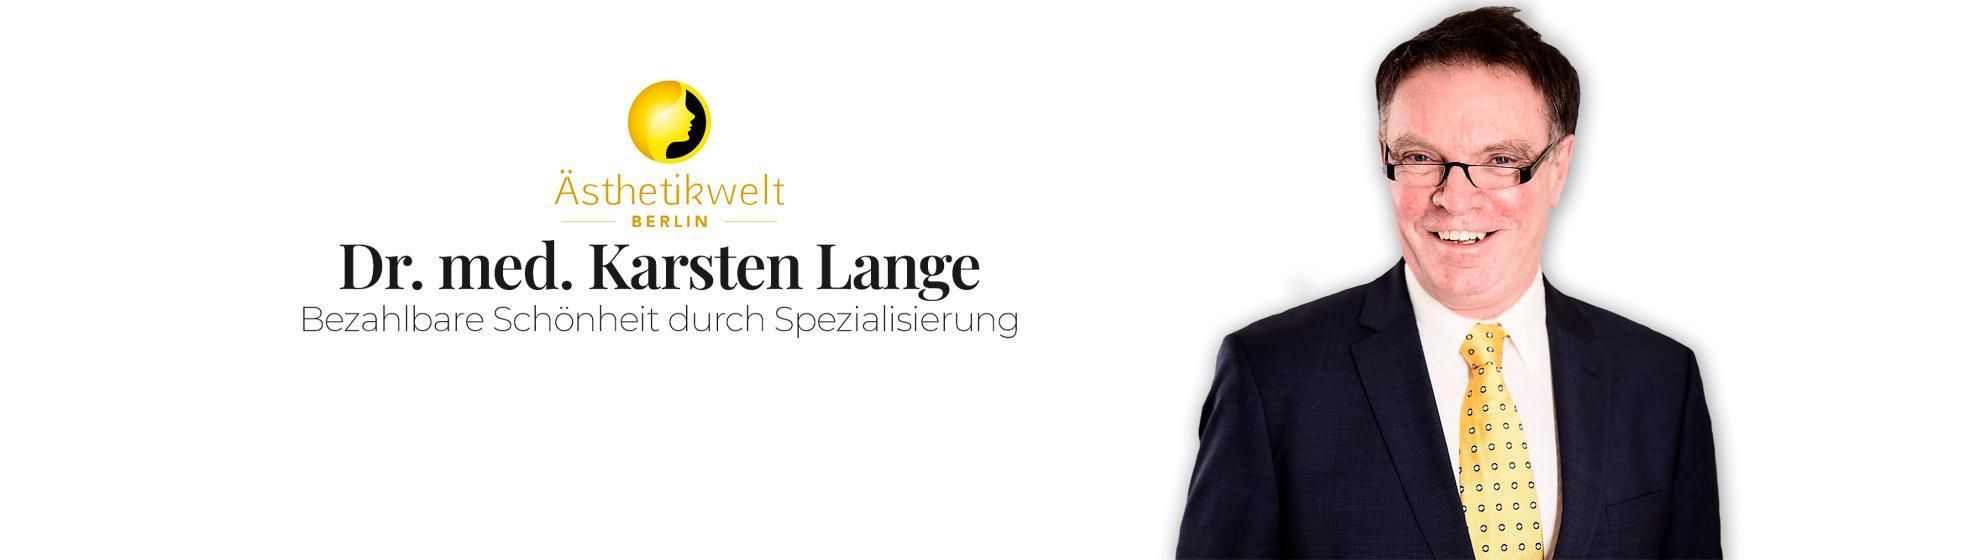 Dr. med. Karsten Lange